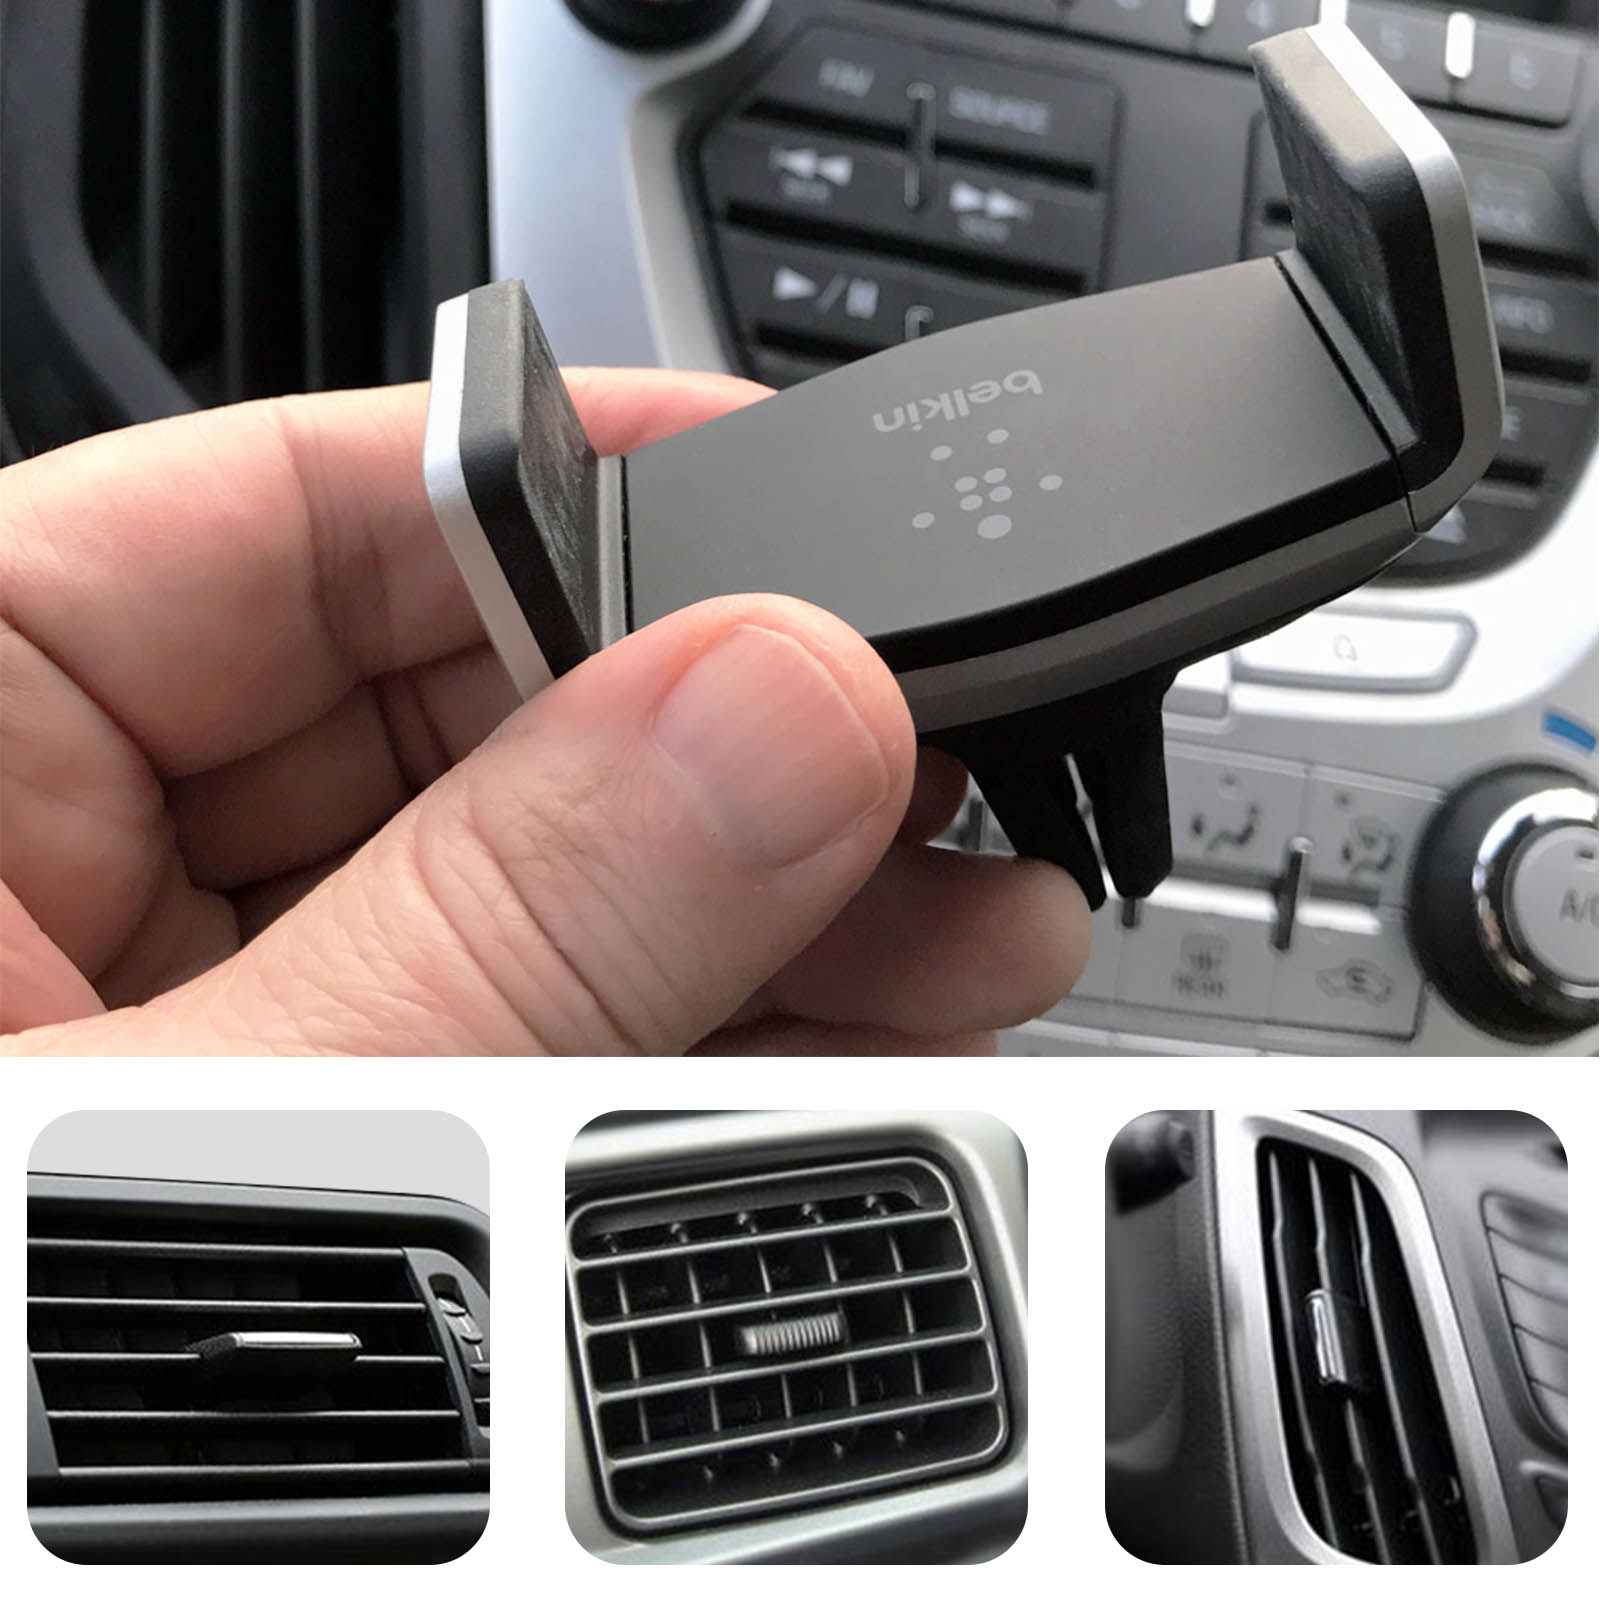 Suporte magnético para ventilação de carro Belkin, compatível com